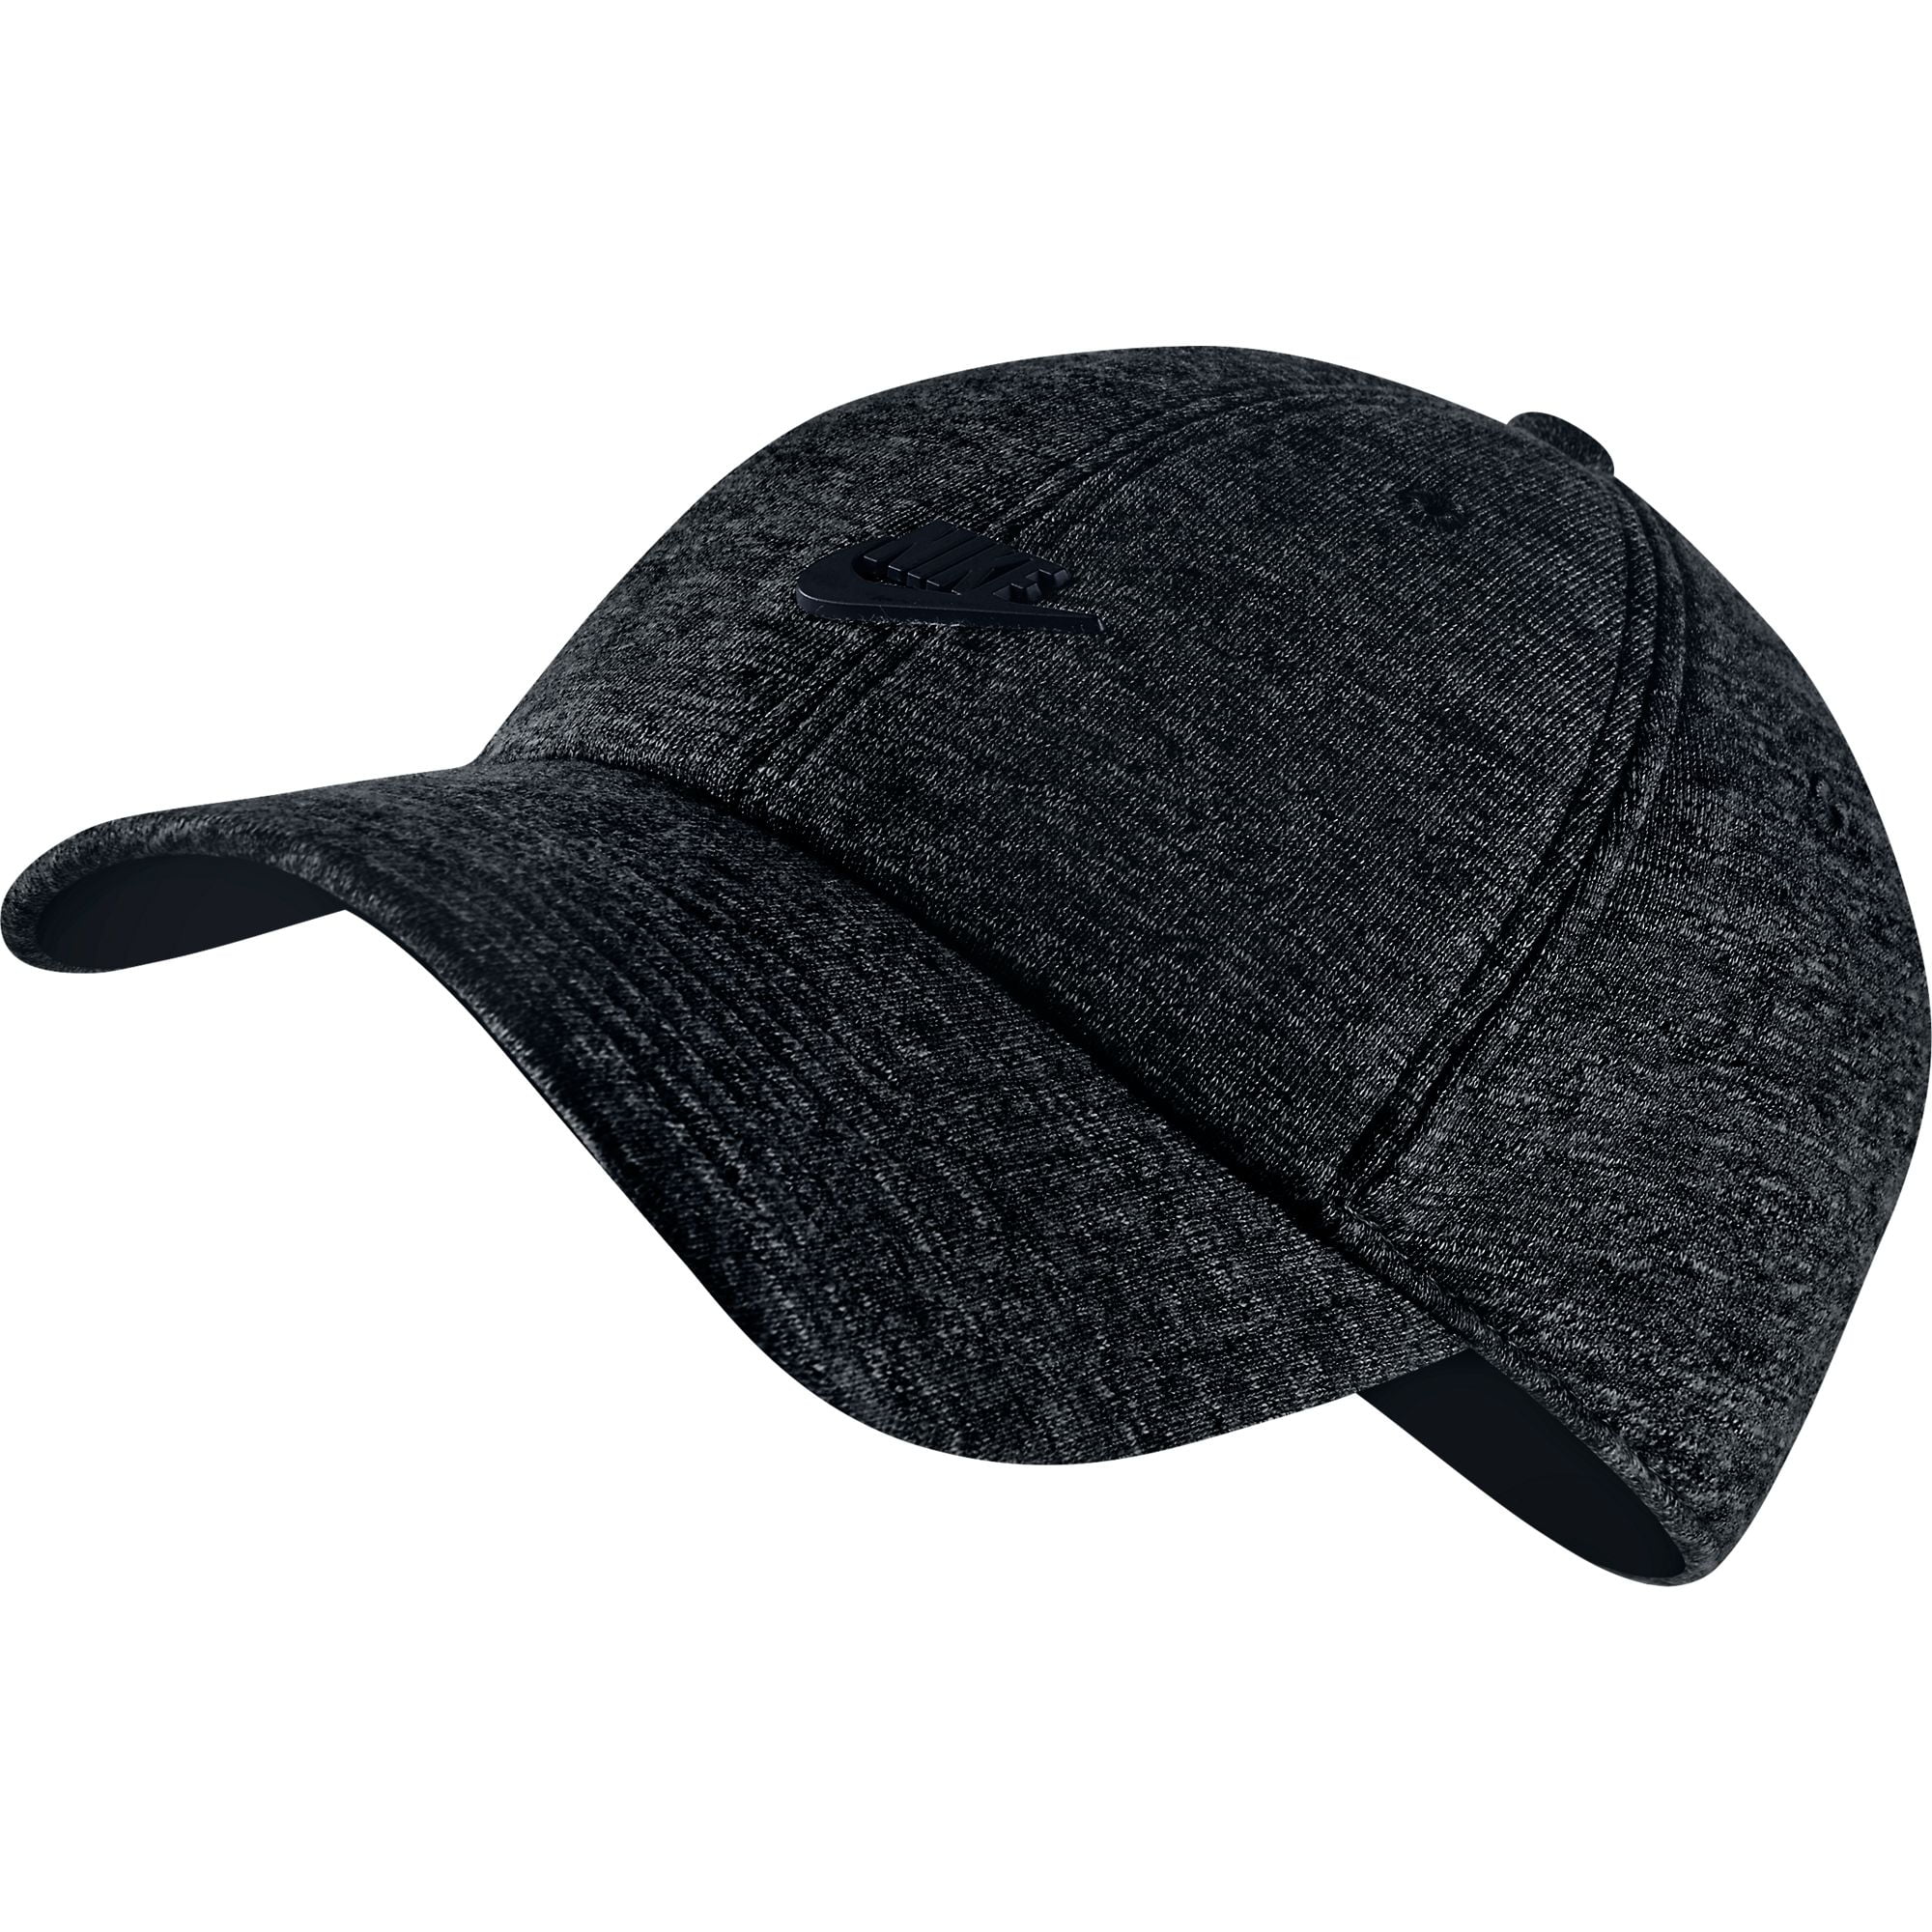 Nike Heritage 86 Futura Unisex Adjustable Hat Cap Black Heatherblack